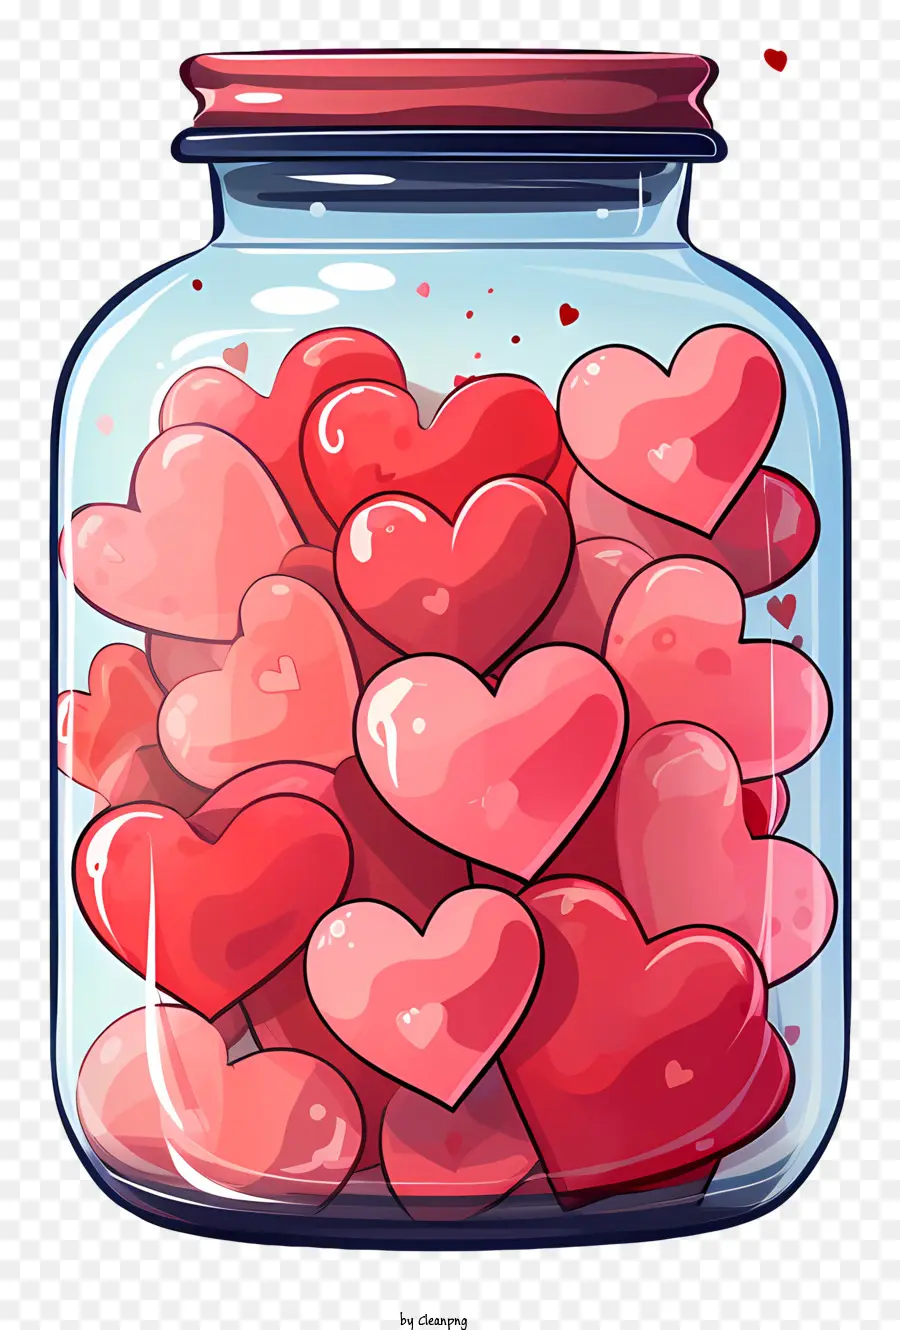 Ngày Valentine - Sự sắp xếp bình thường của trái tim màu đỏ trong bình minh trong suốt